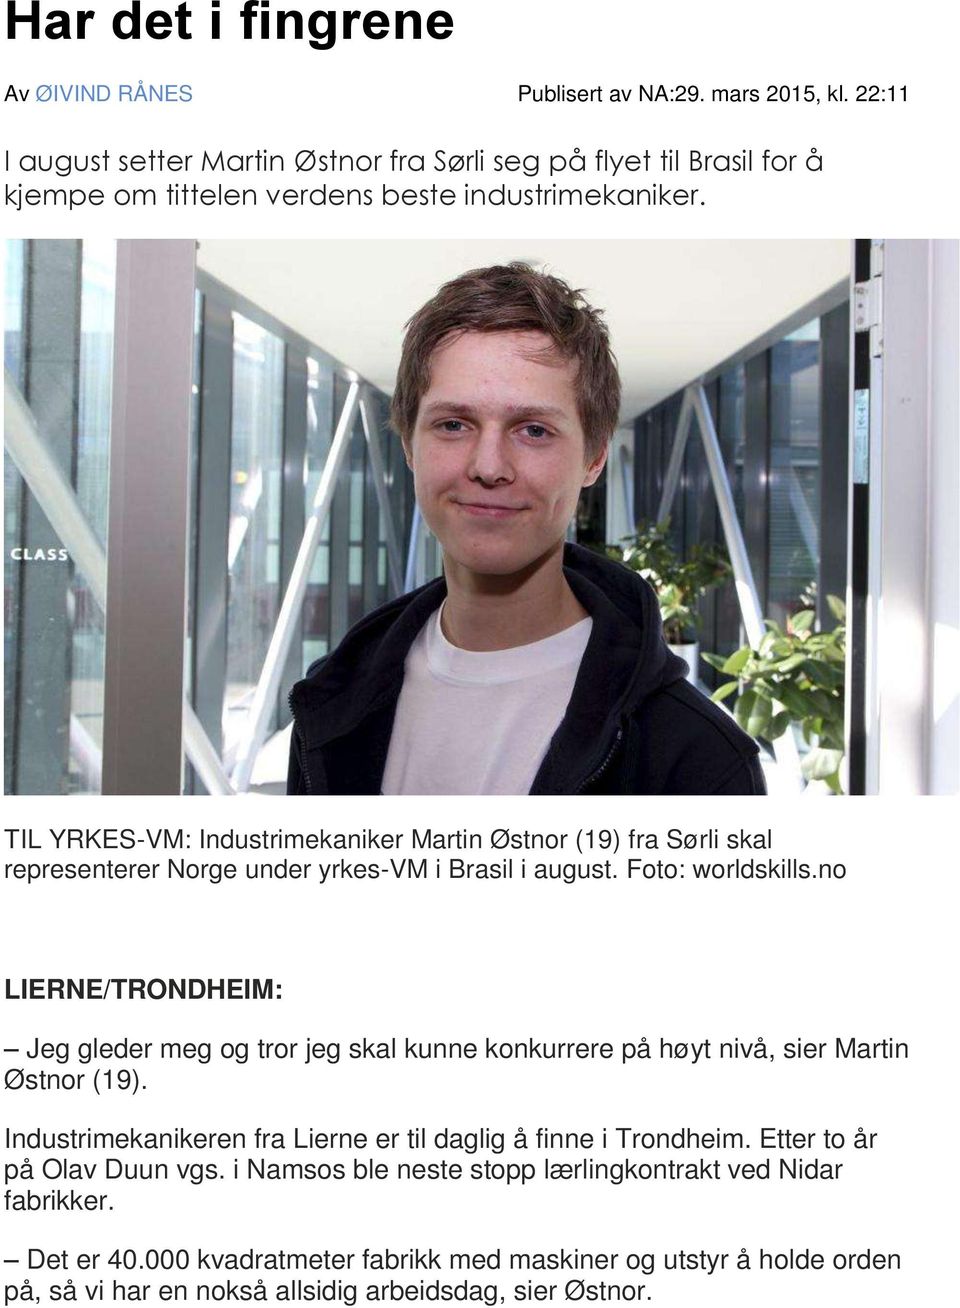 TIL YRKES-VM: Industrimekaniker Martin Østnor (19) fra Sørli skal representerer Norge under yrkes-vm i Brasil i august. Foto: worldskills.